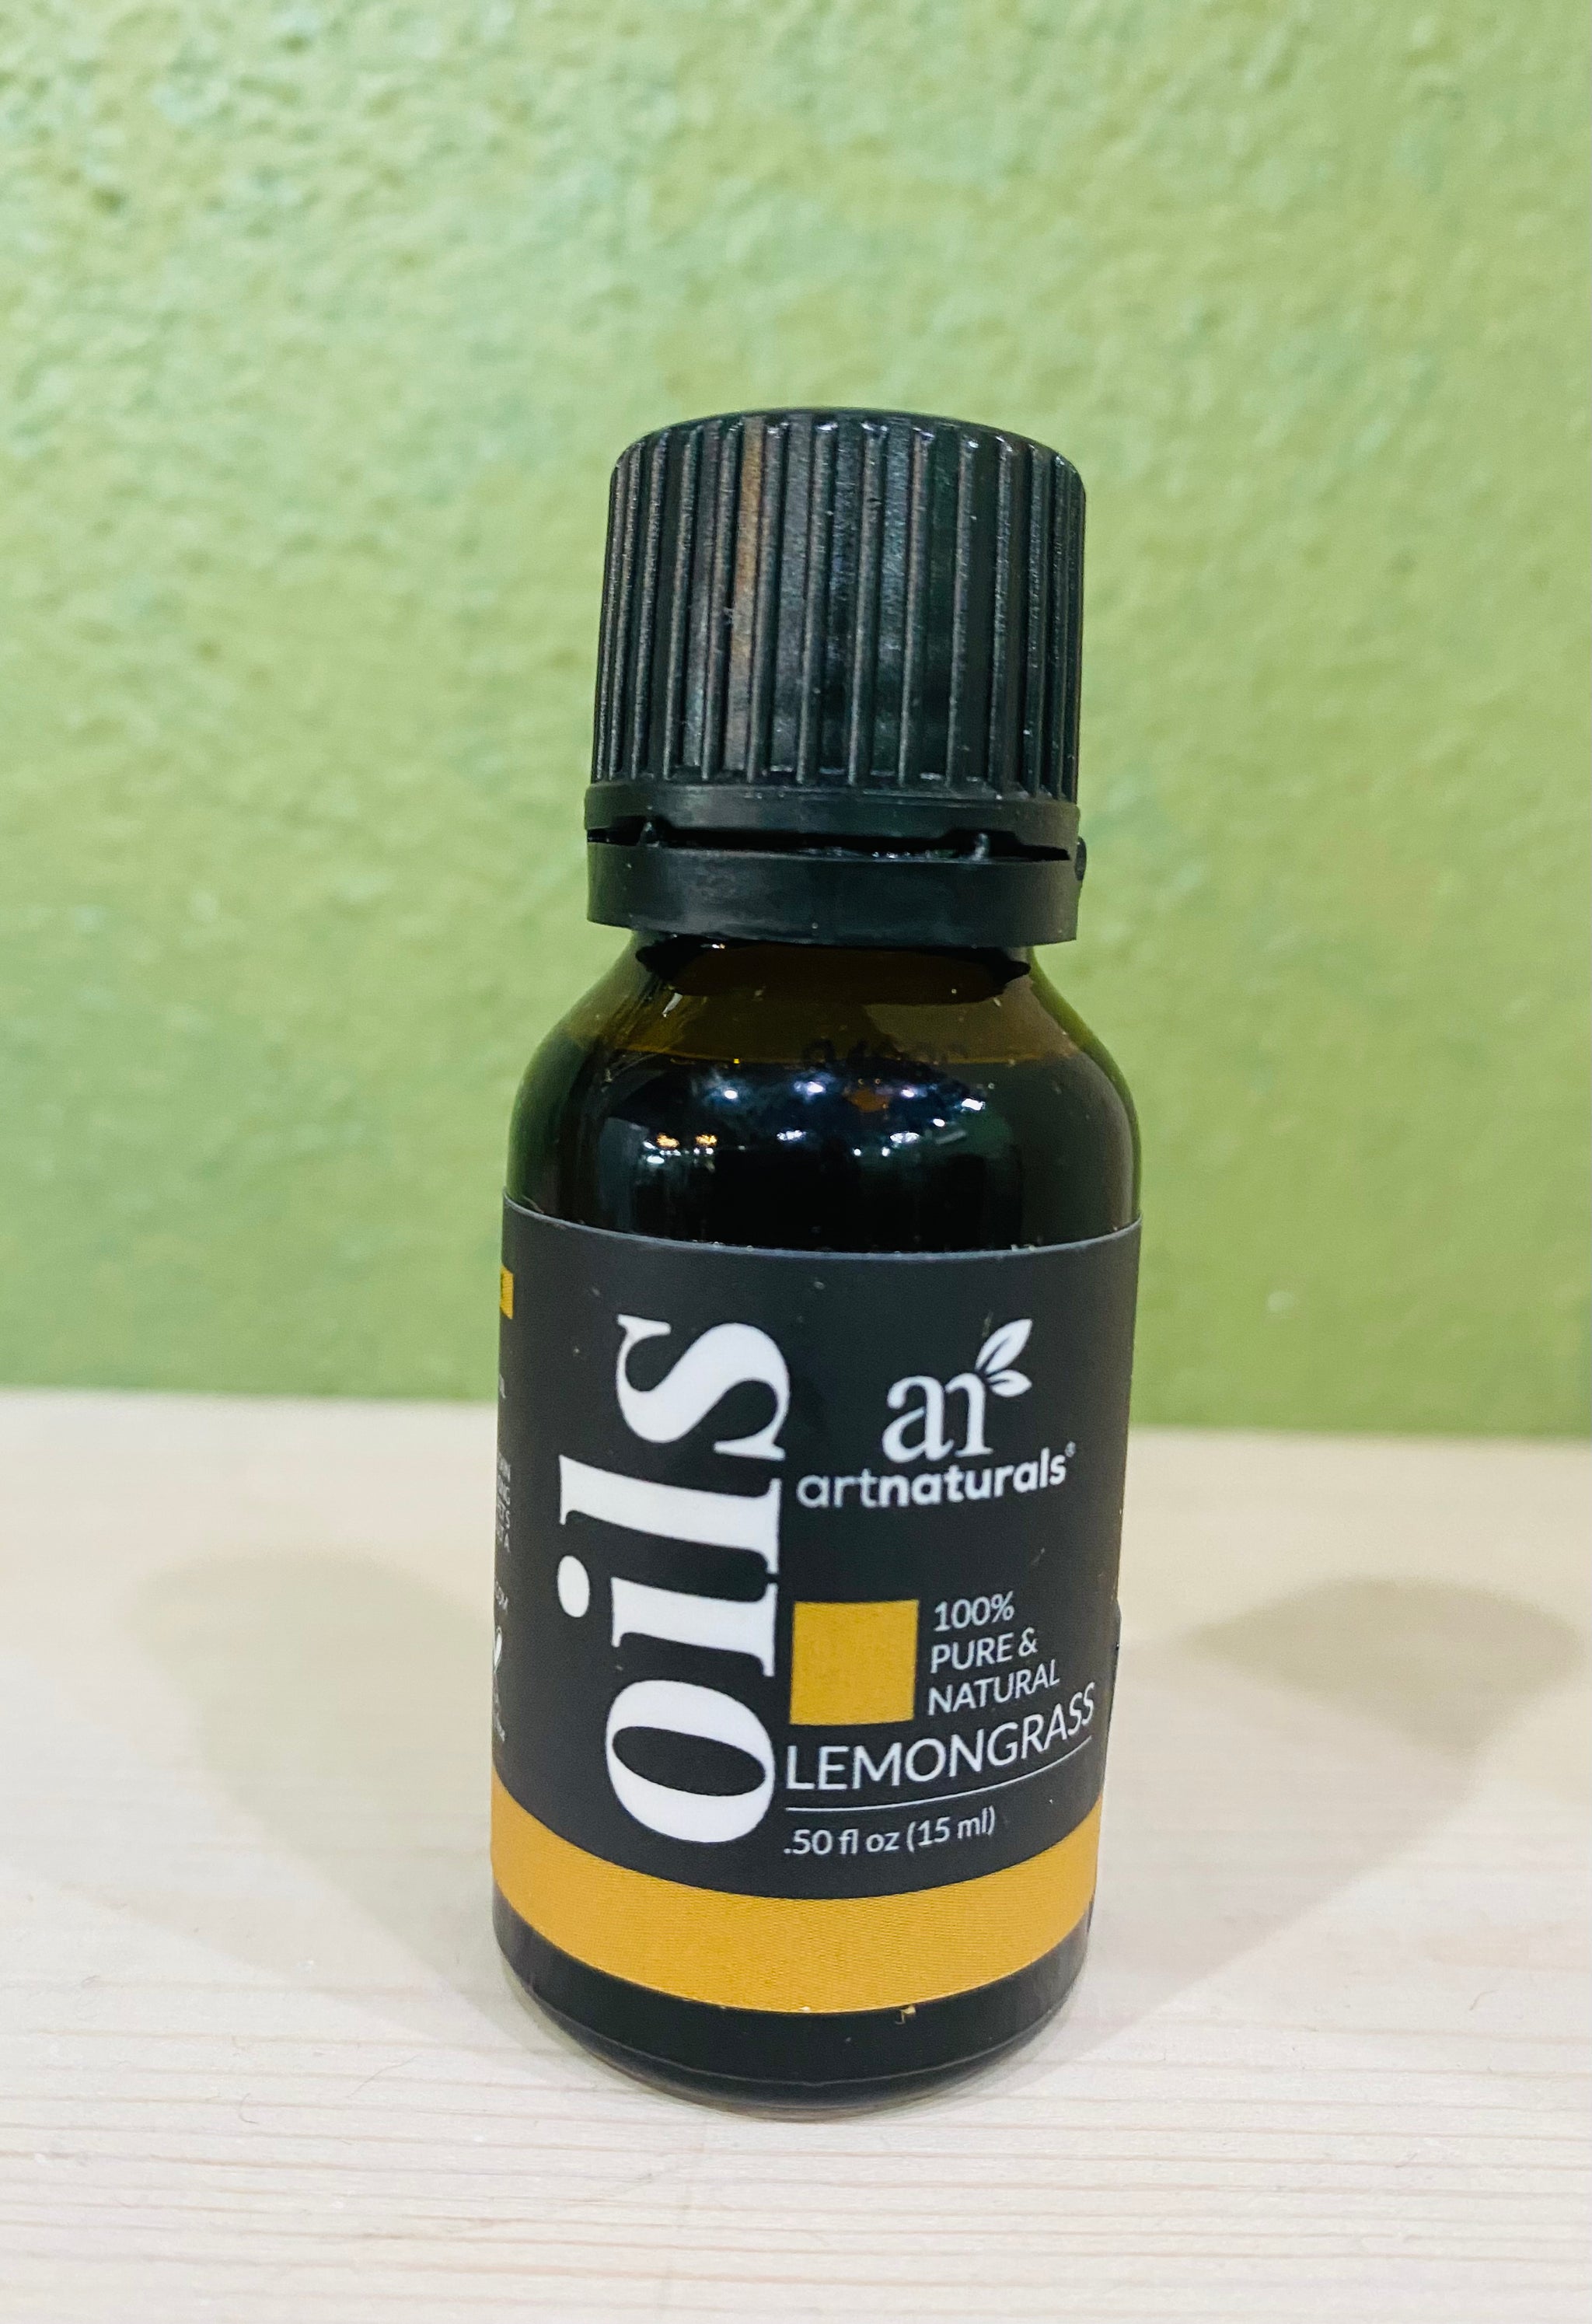 Lot of 2 Sun Essential Oils in Lemongrass, 8 fl oz per BOTTLE